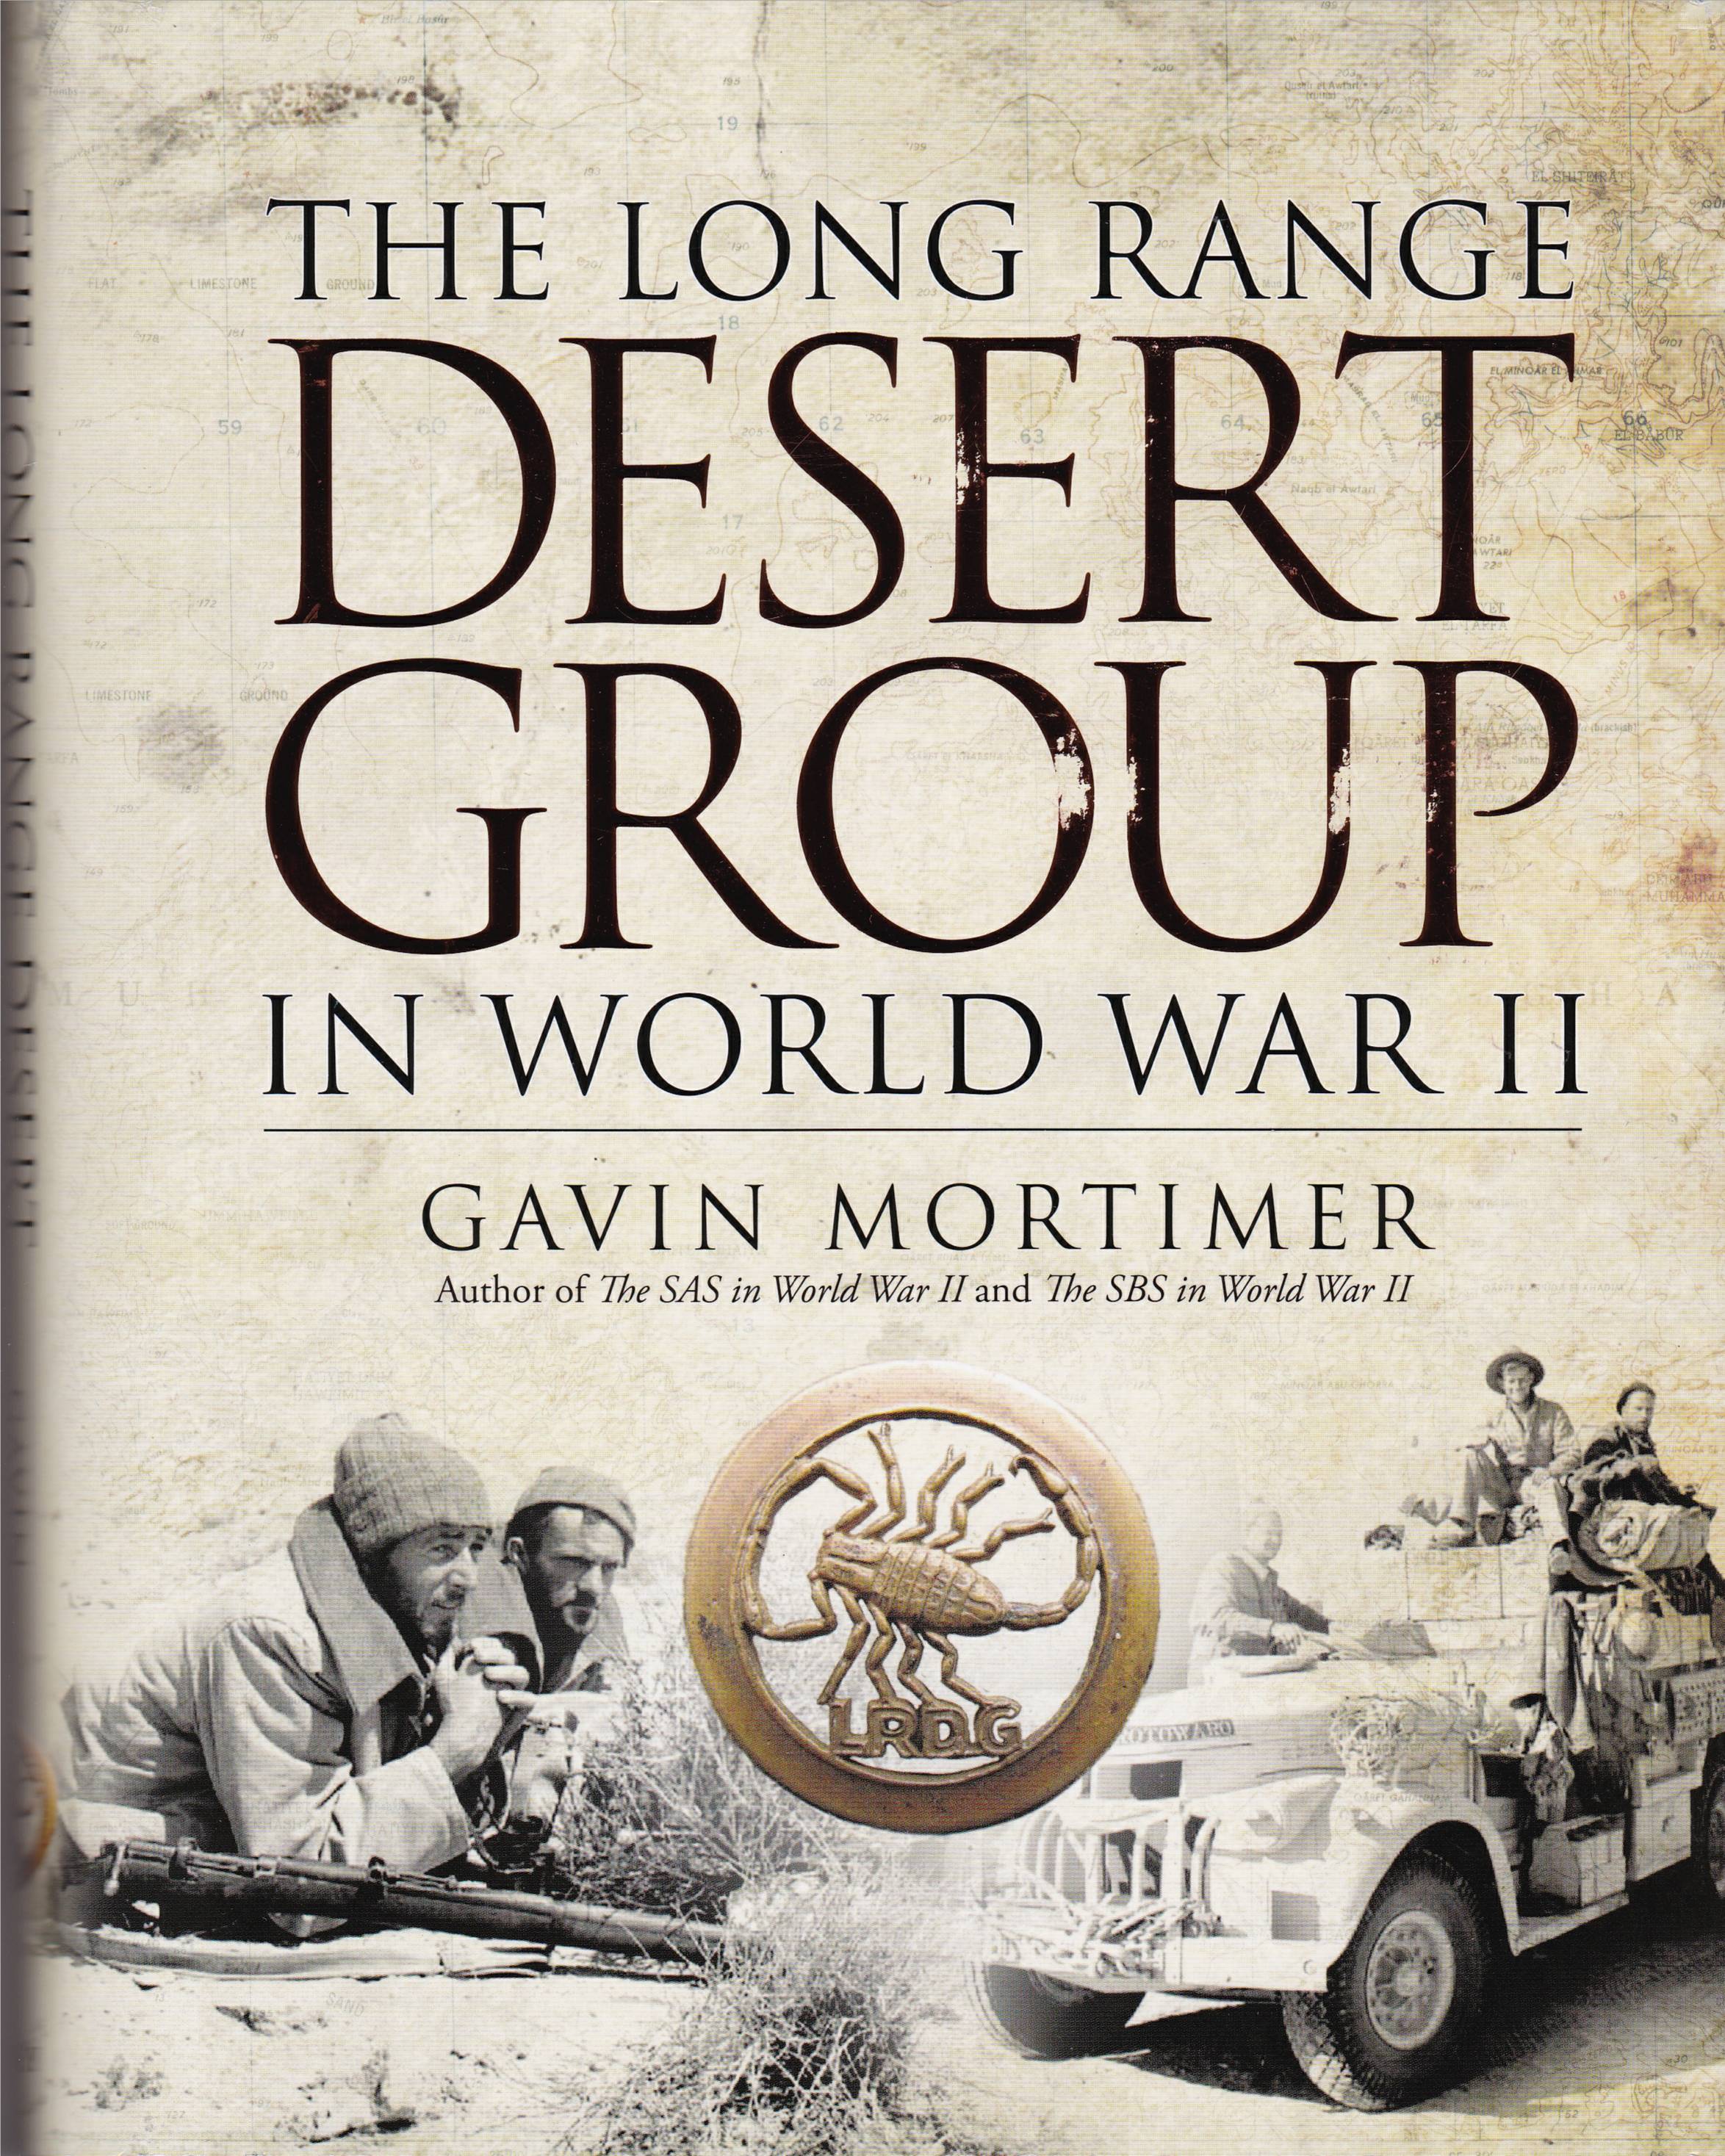 gavin-mortimer-long-range-desert-group-ww2-book-cover